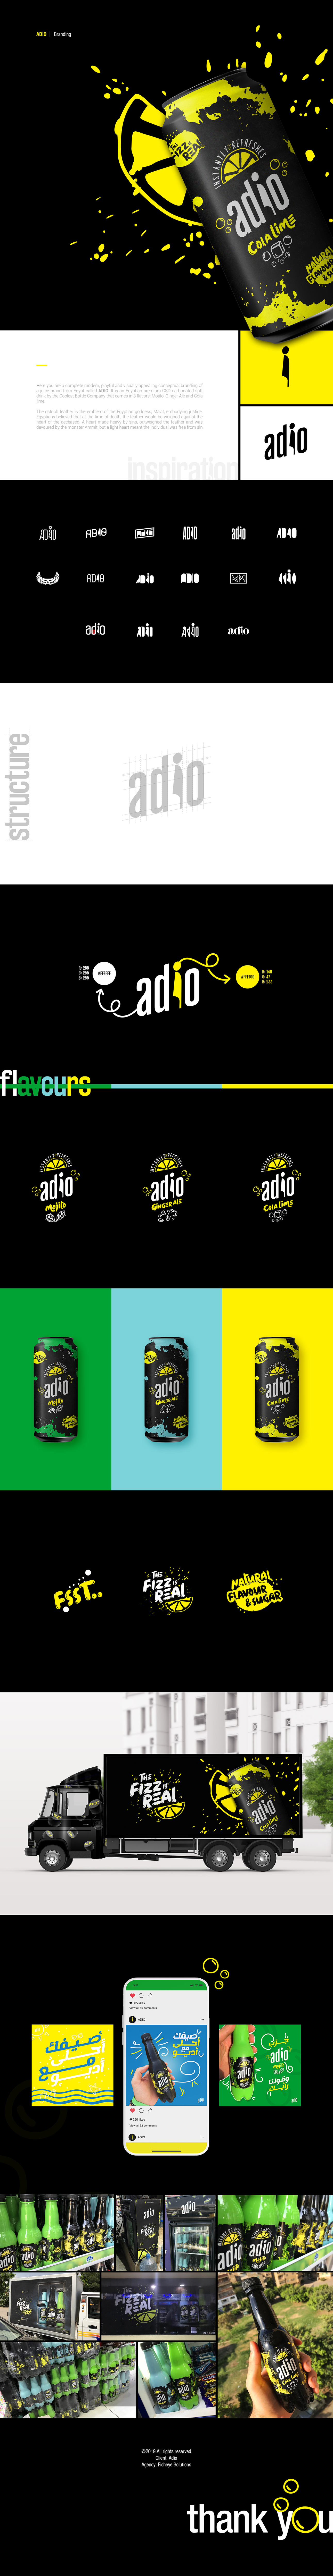 Adio brandning   drink identity logo photoshop